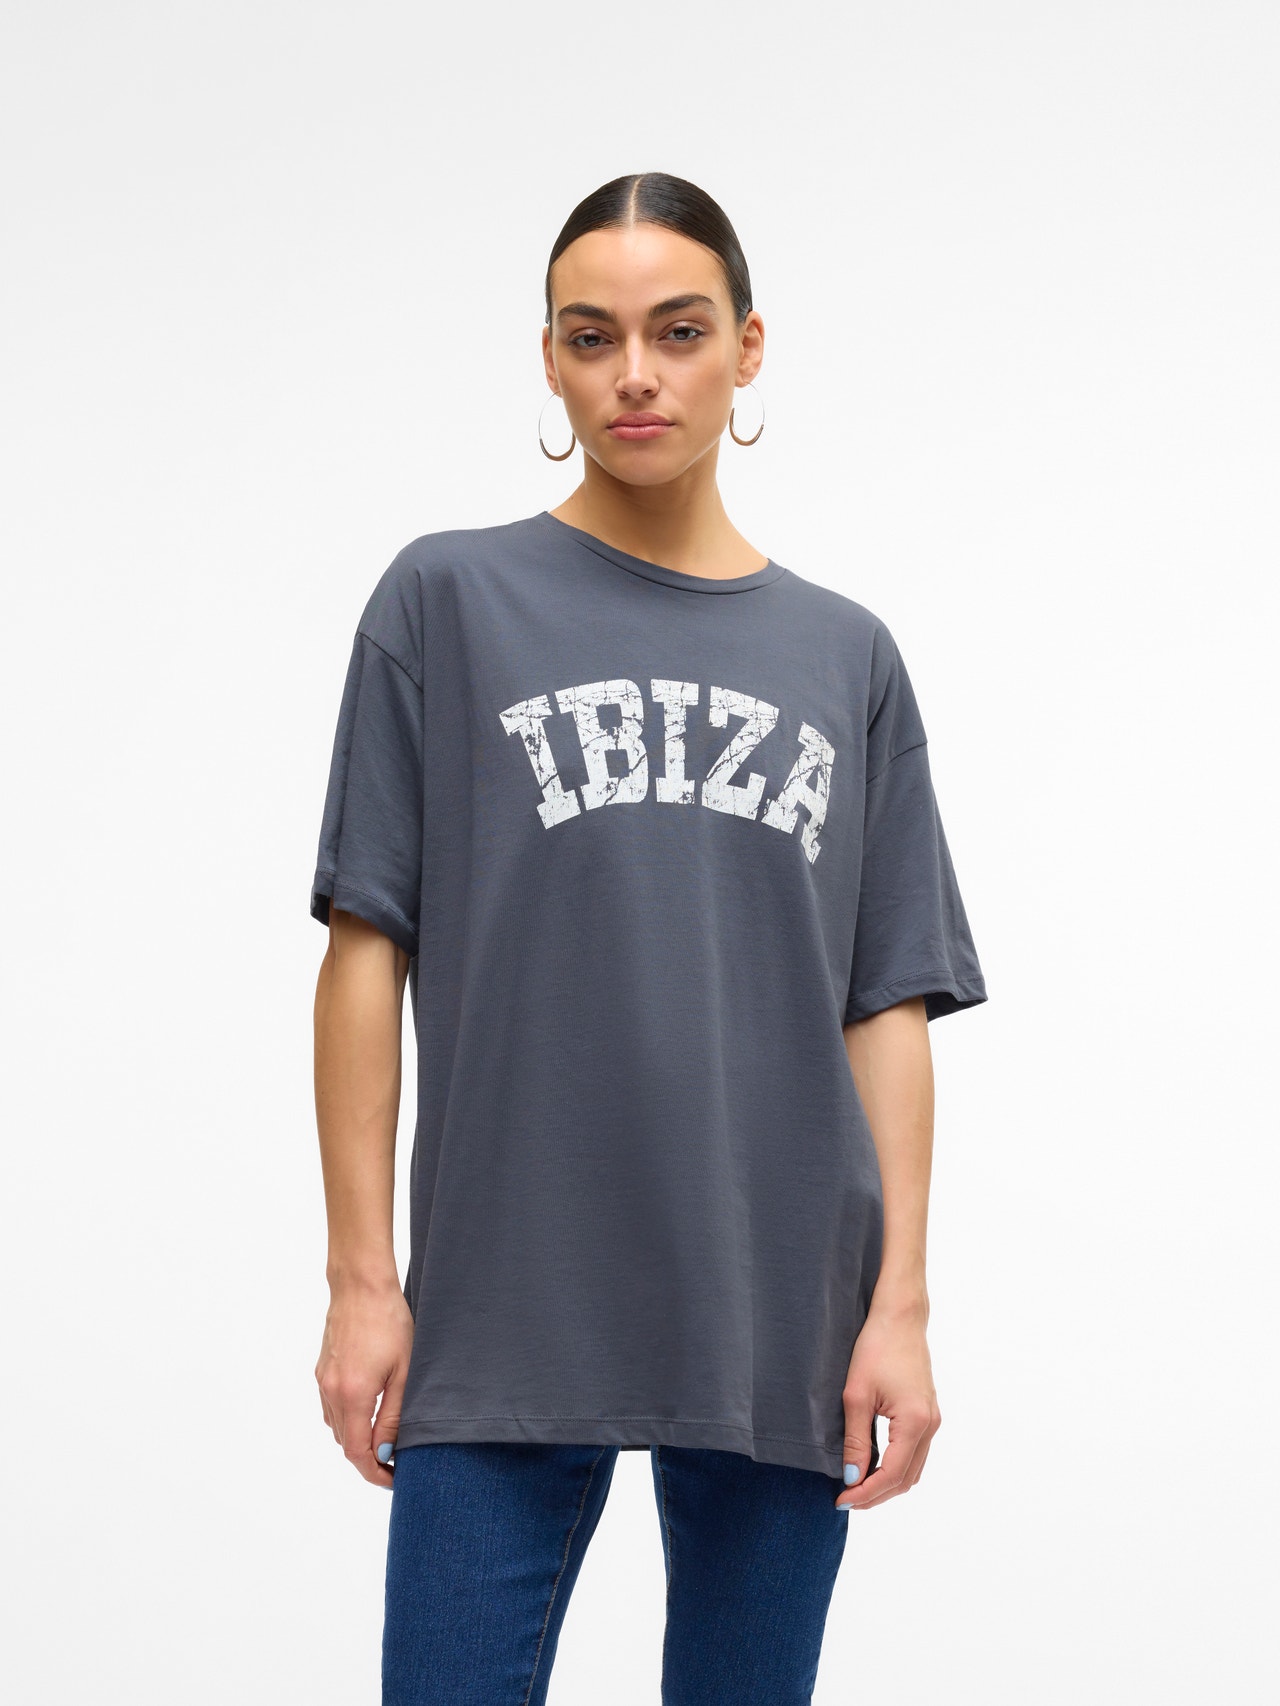 Vero Moda VMLISA T-Shirt -Asphalt - 10324005